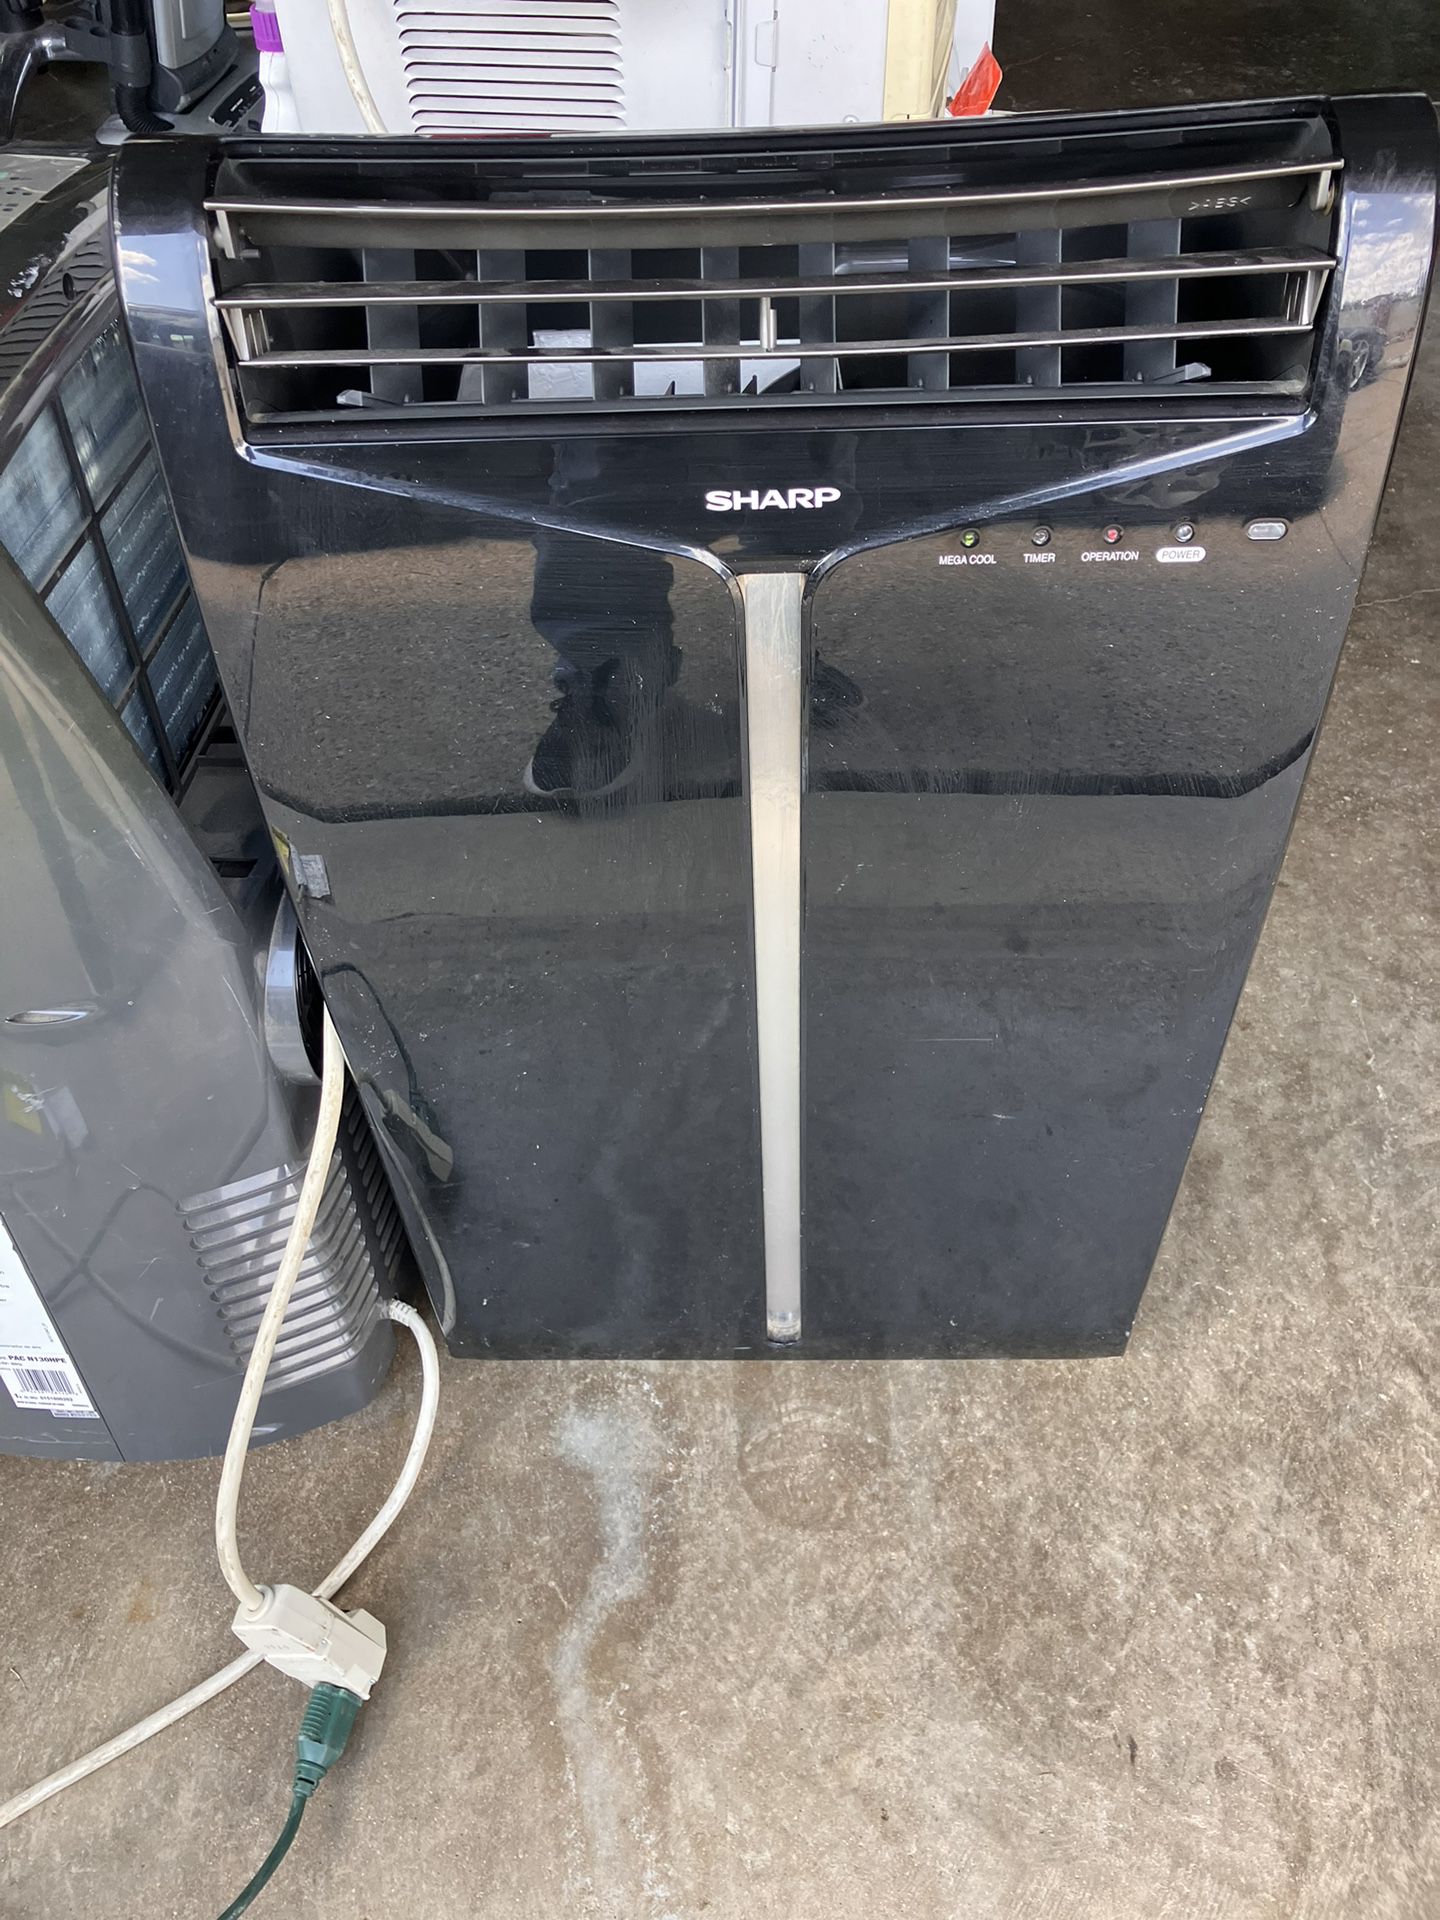  Air Conditioner